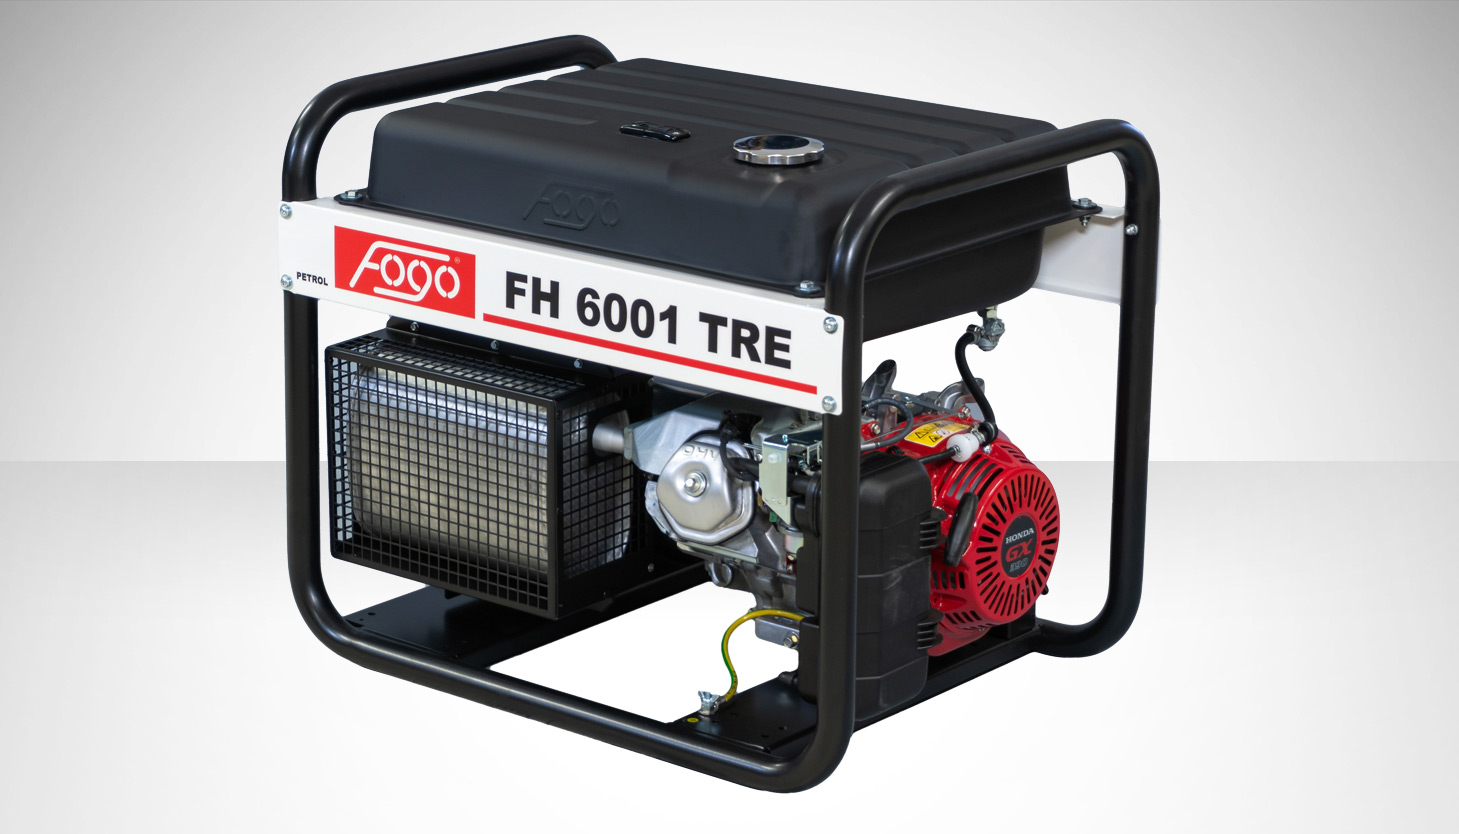 FOGO FH 6001 TRE Agregat prądotwórczy jednofazowy nr katalogowy 28158